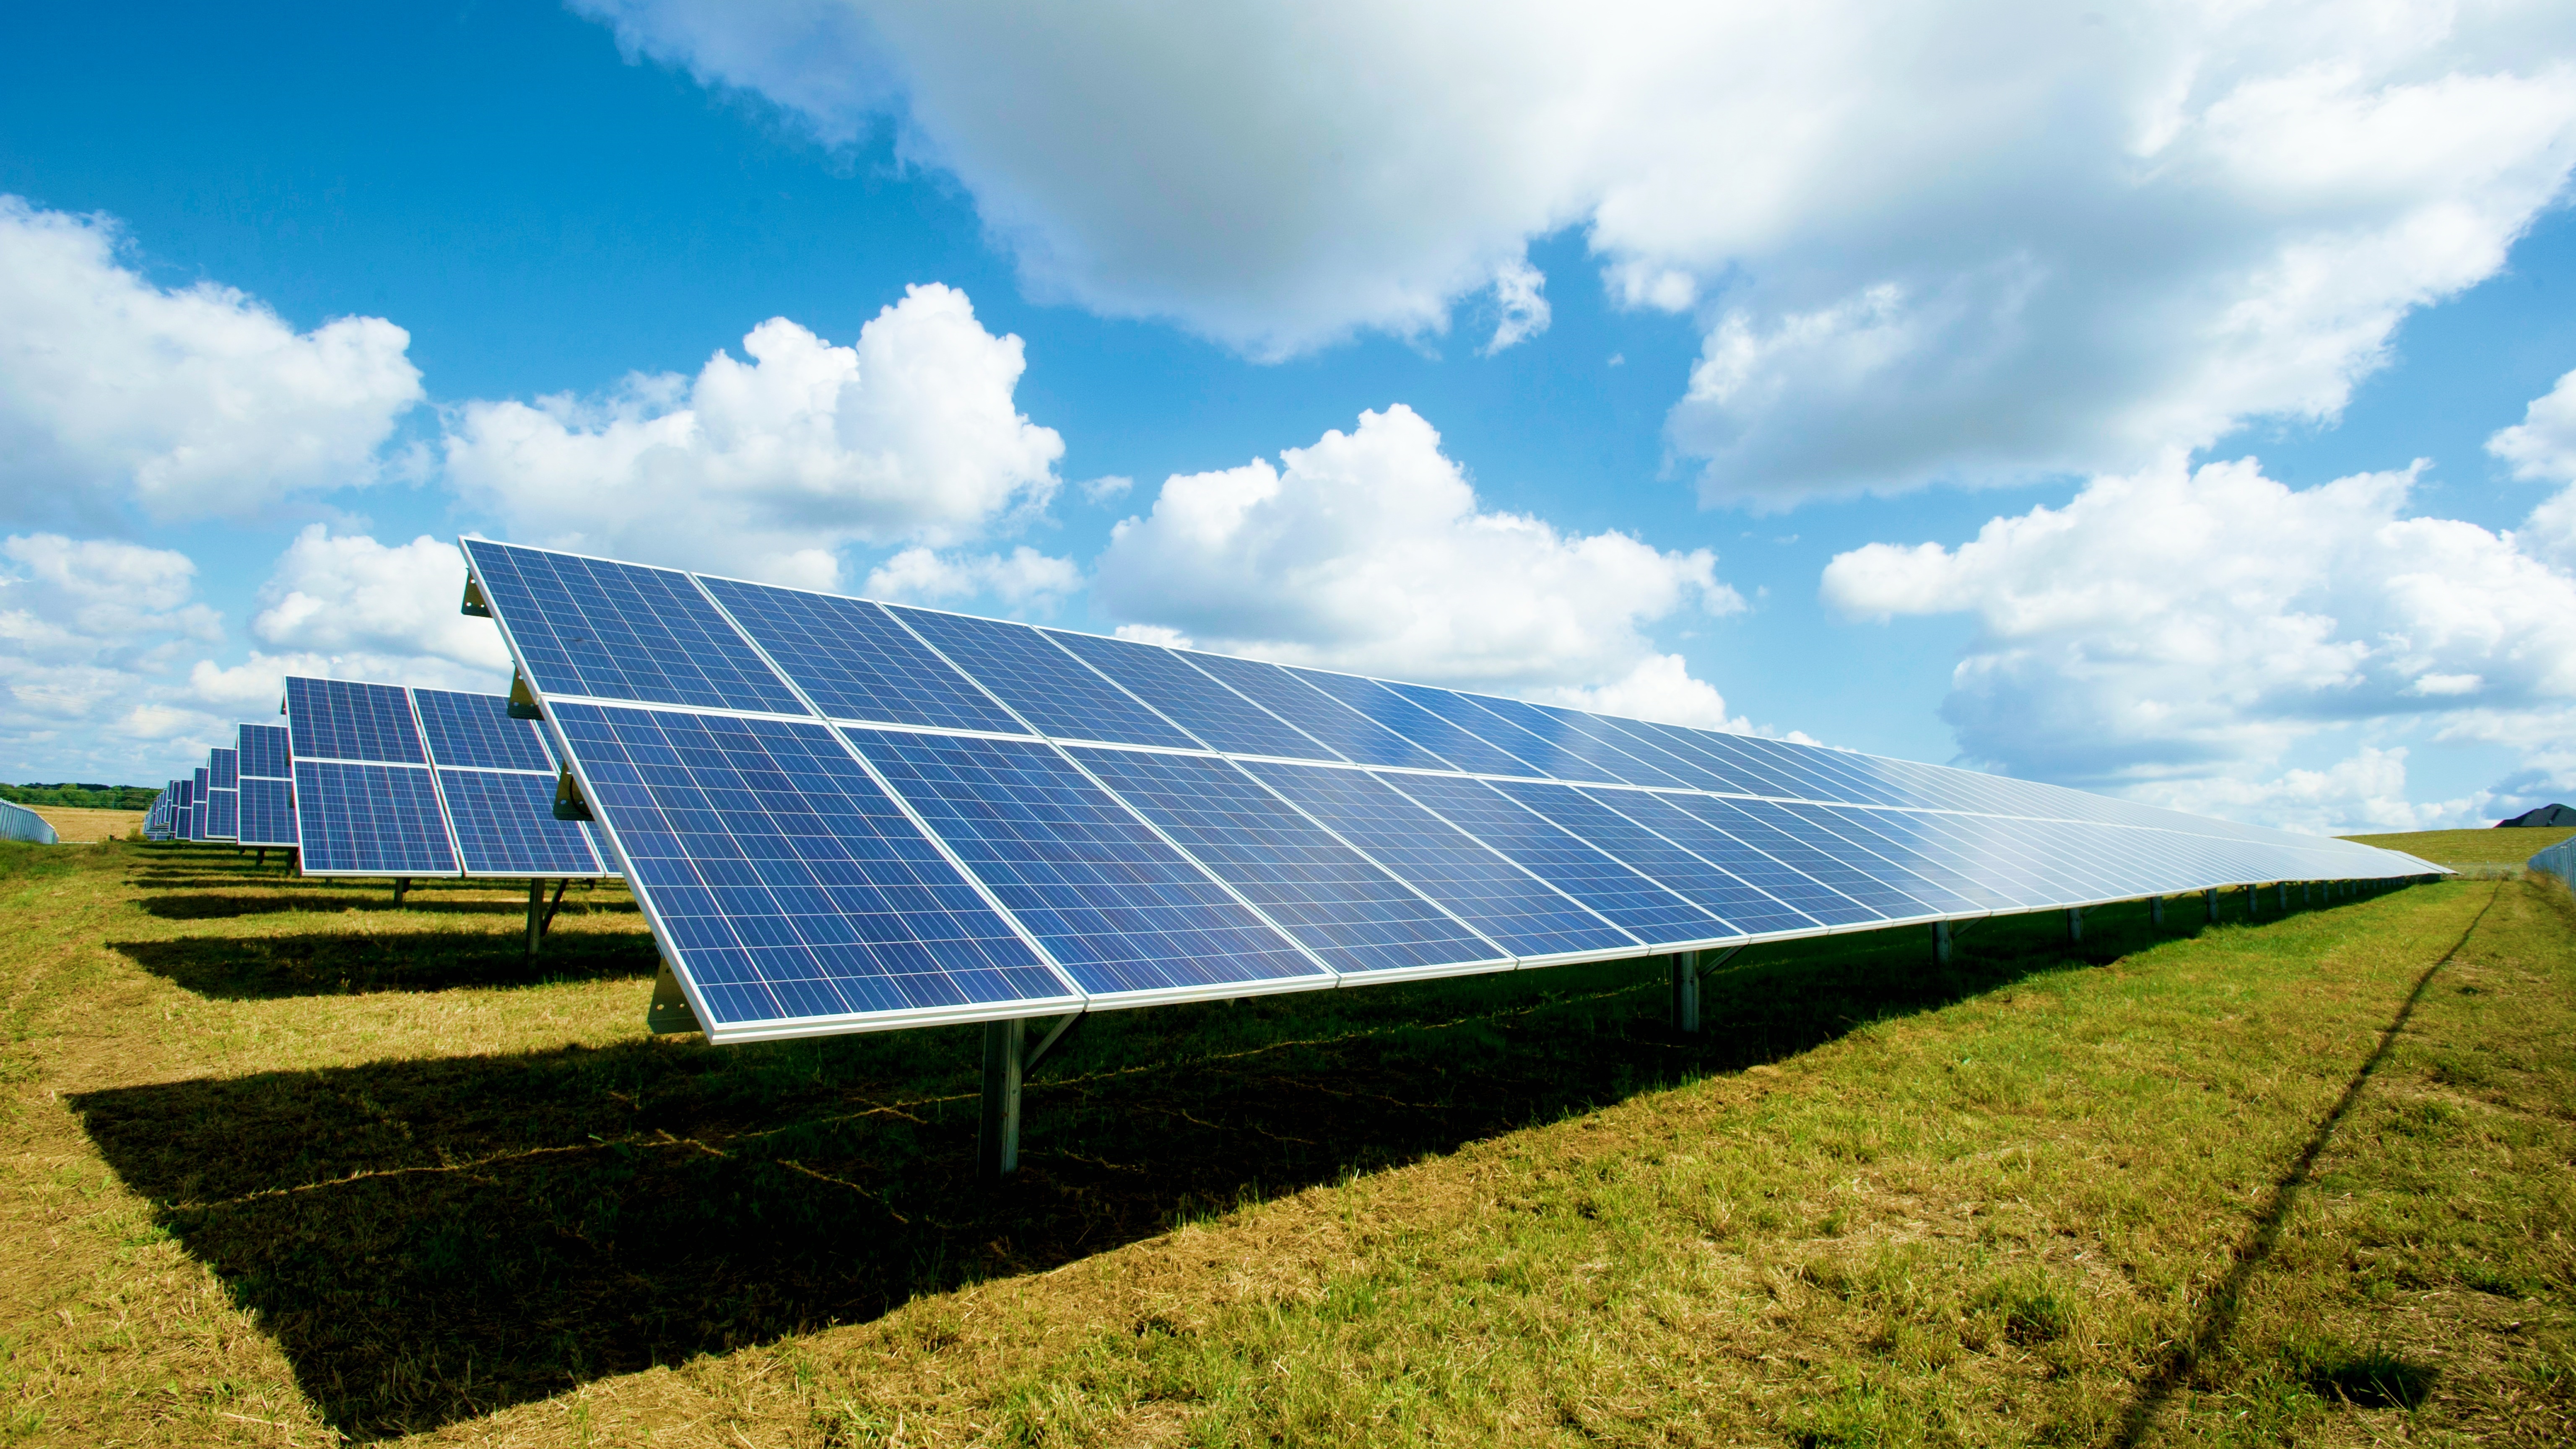 #Neue Technologie könnte Solarpanele günstiger machen – oder als Tandem den Wirkungsgrad erhöhen